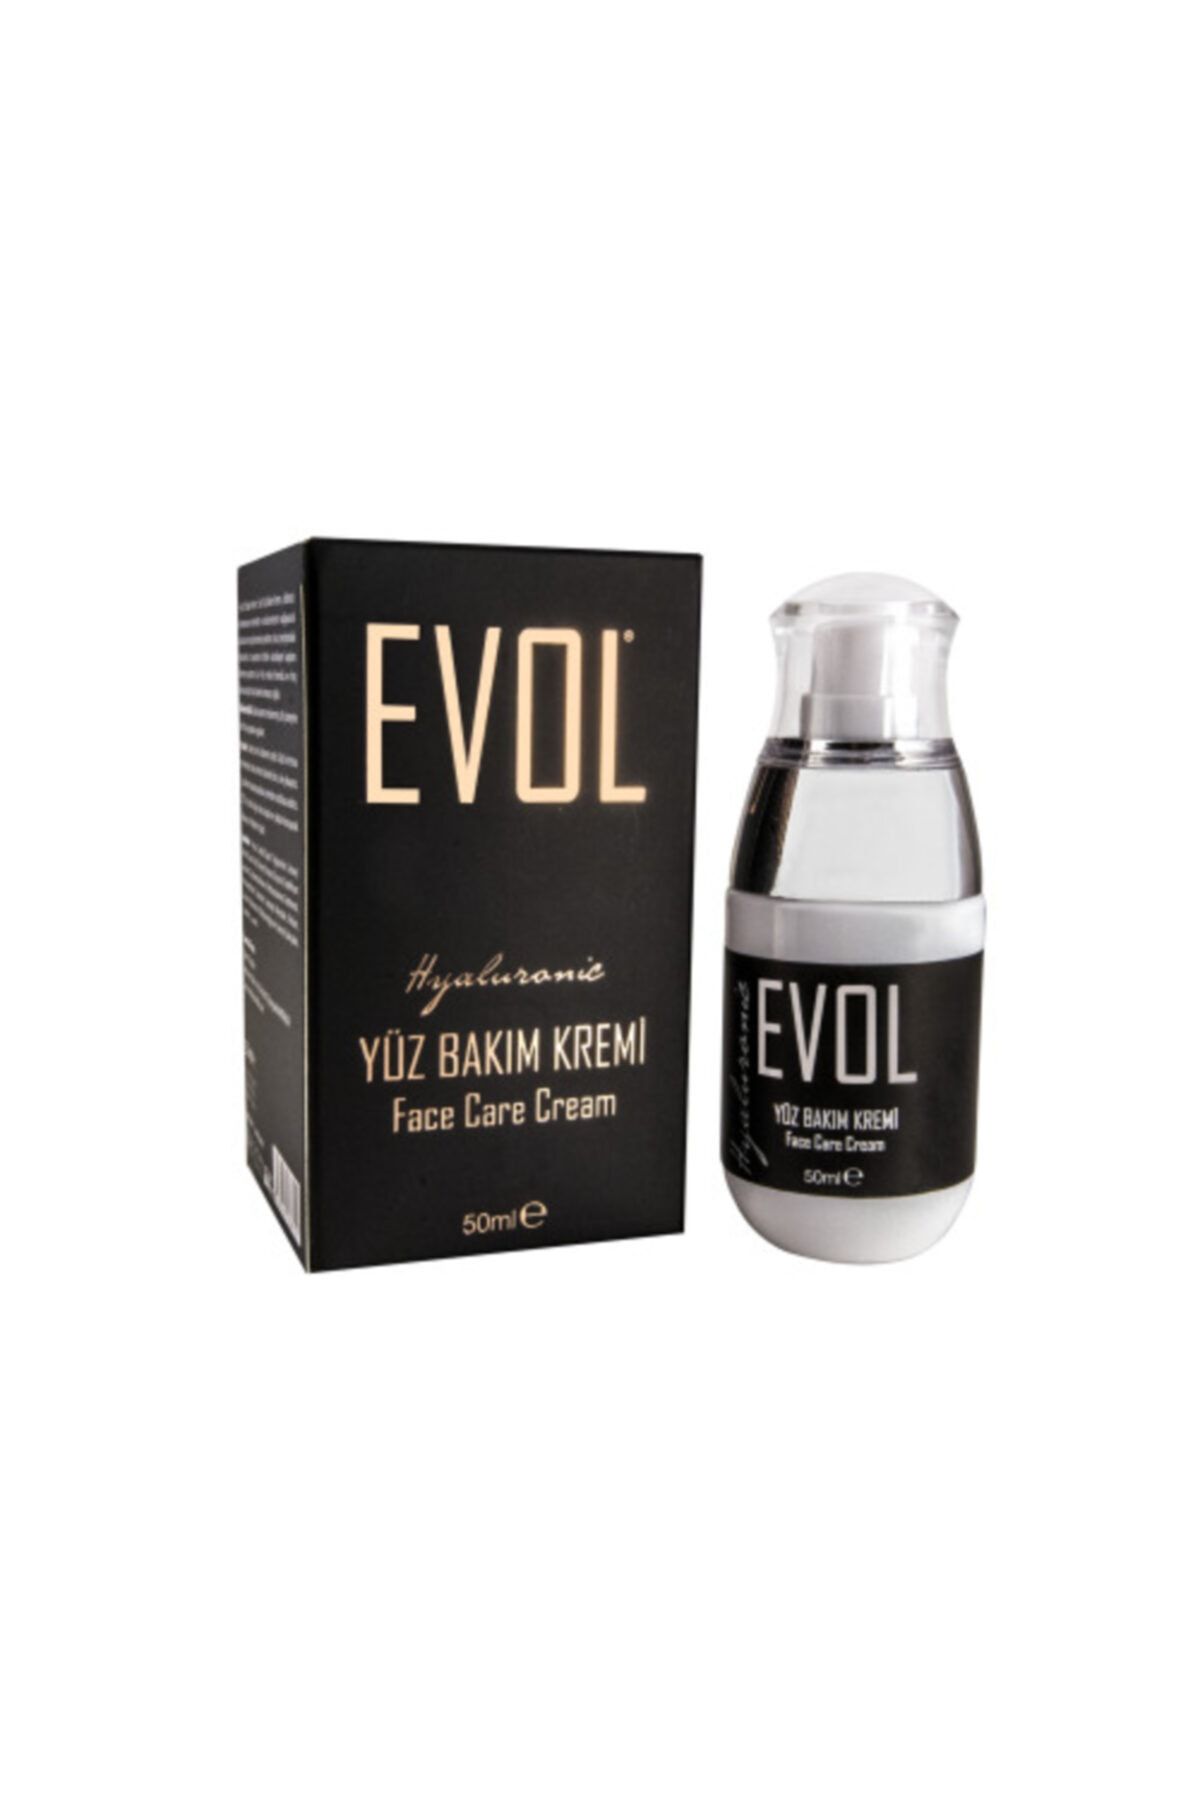 EVOL Hyaluronic Face Care Cream 50ml- Yüz Bakım Krem 50ml